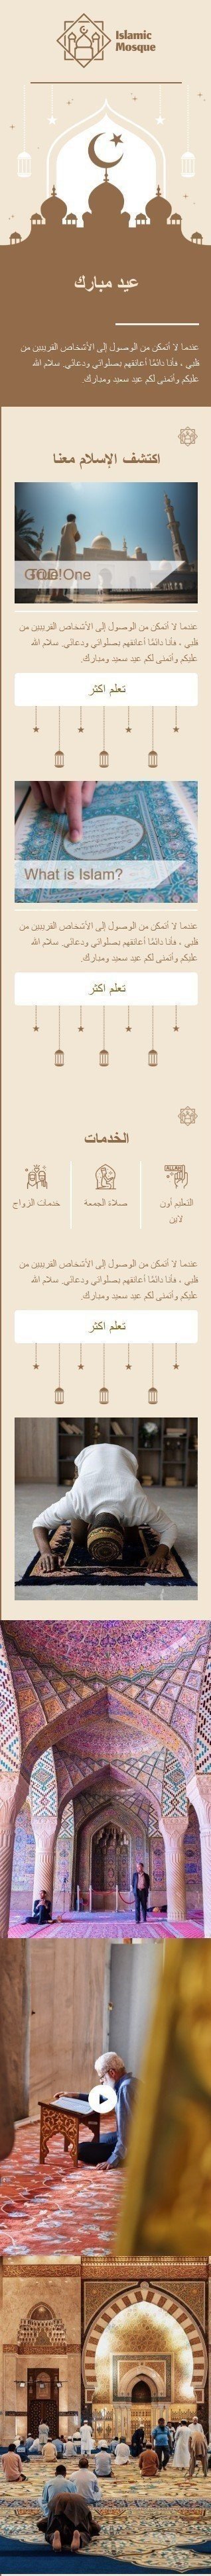 Шаблон письма к празднику Курбан-байрам «Исламская мечеть» для индустрии «Дизайн шаблонов для некоммерческих email-кампаний» мобильный вид